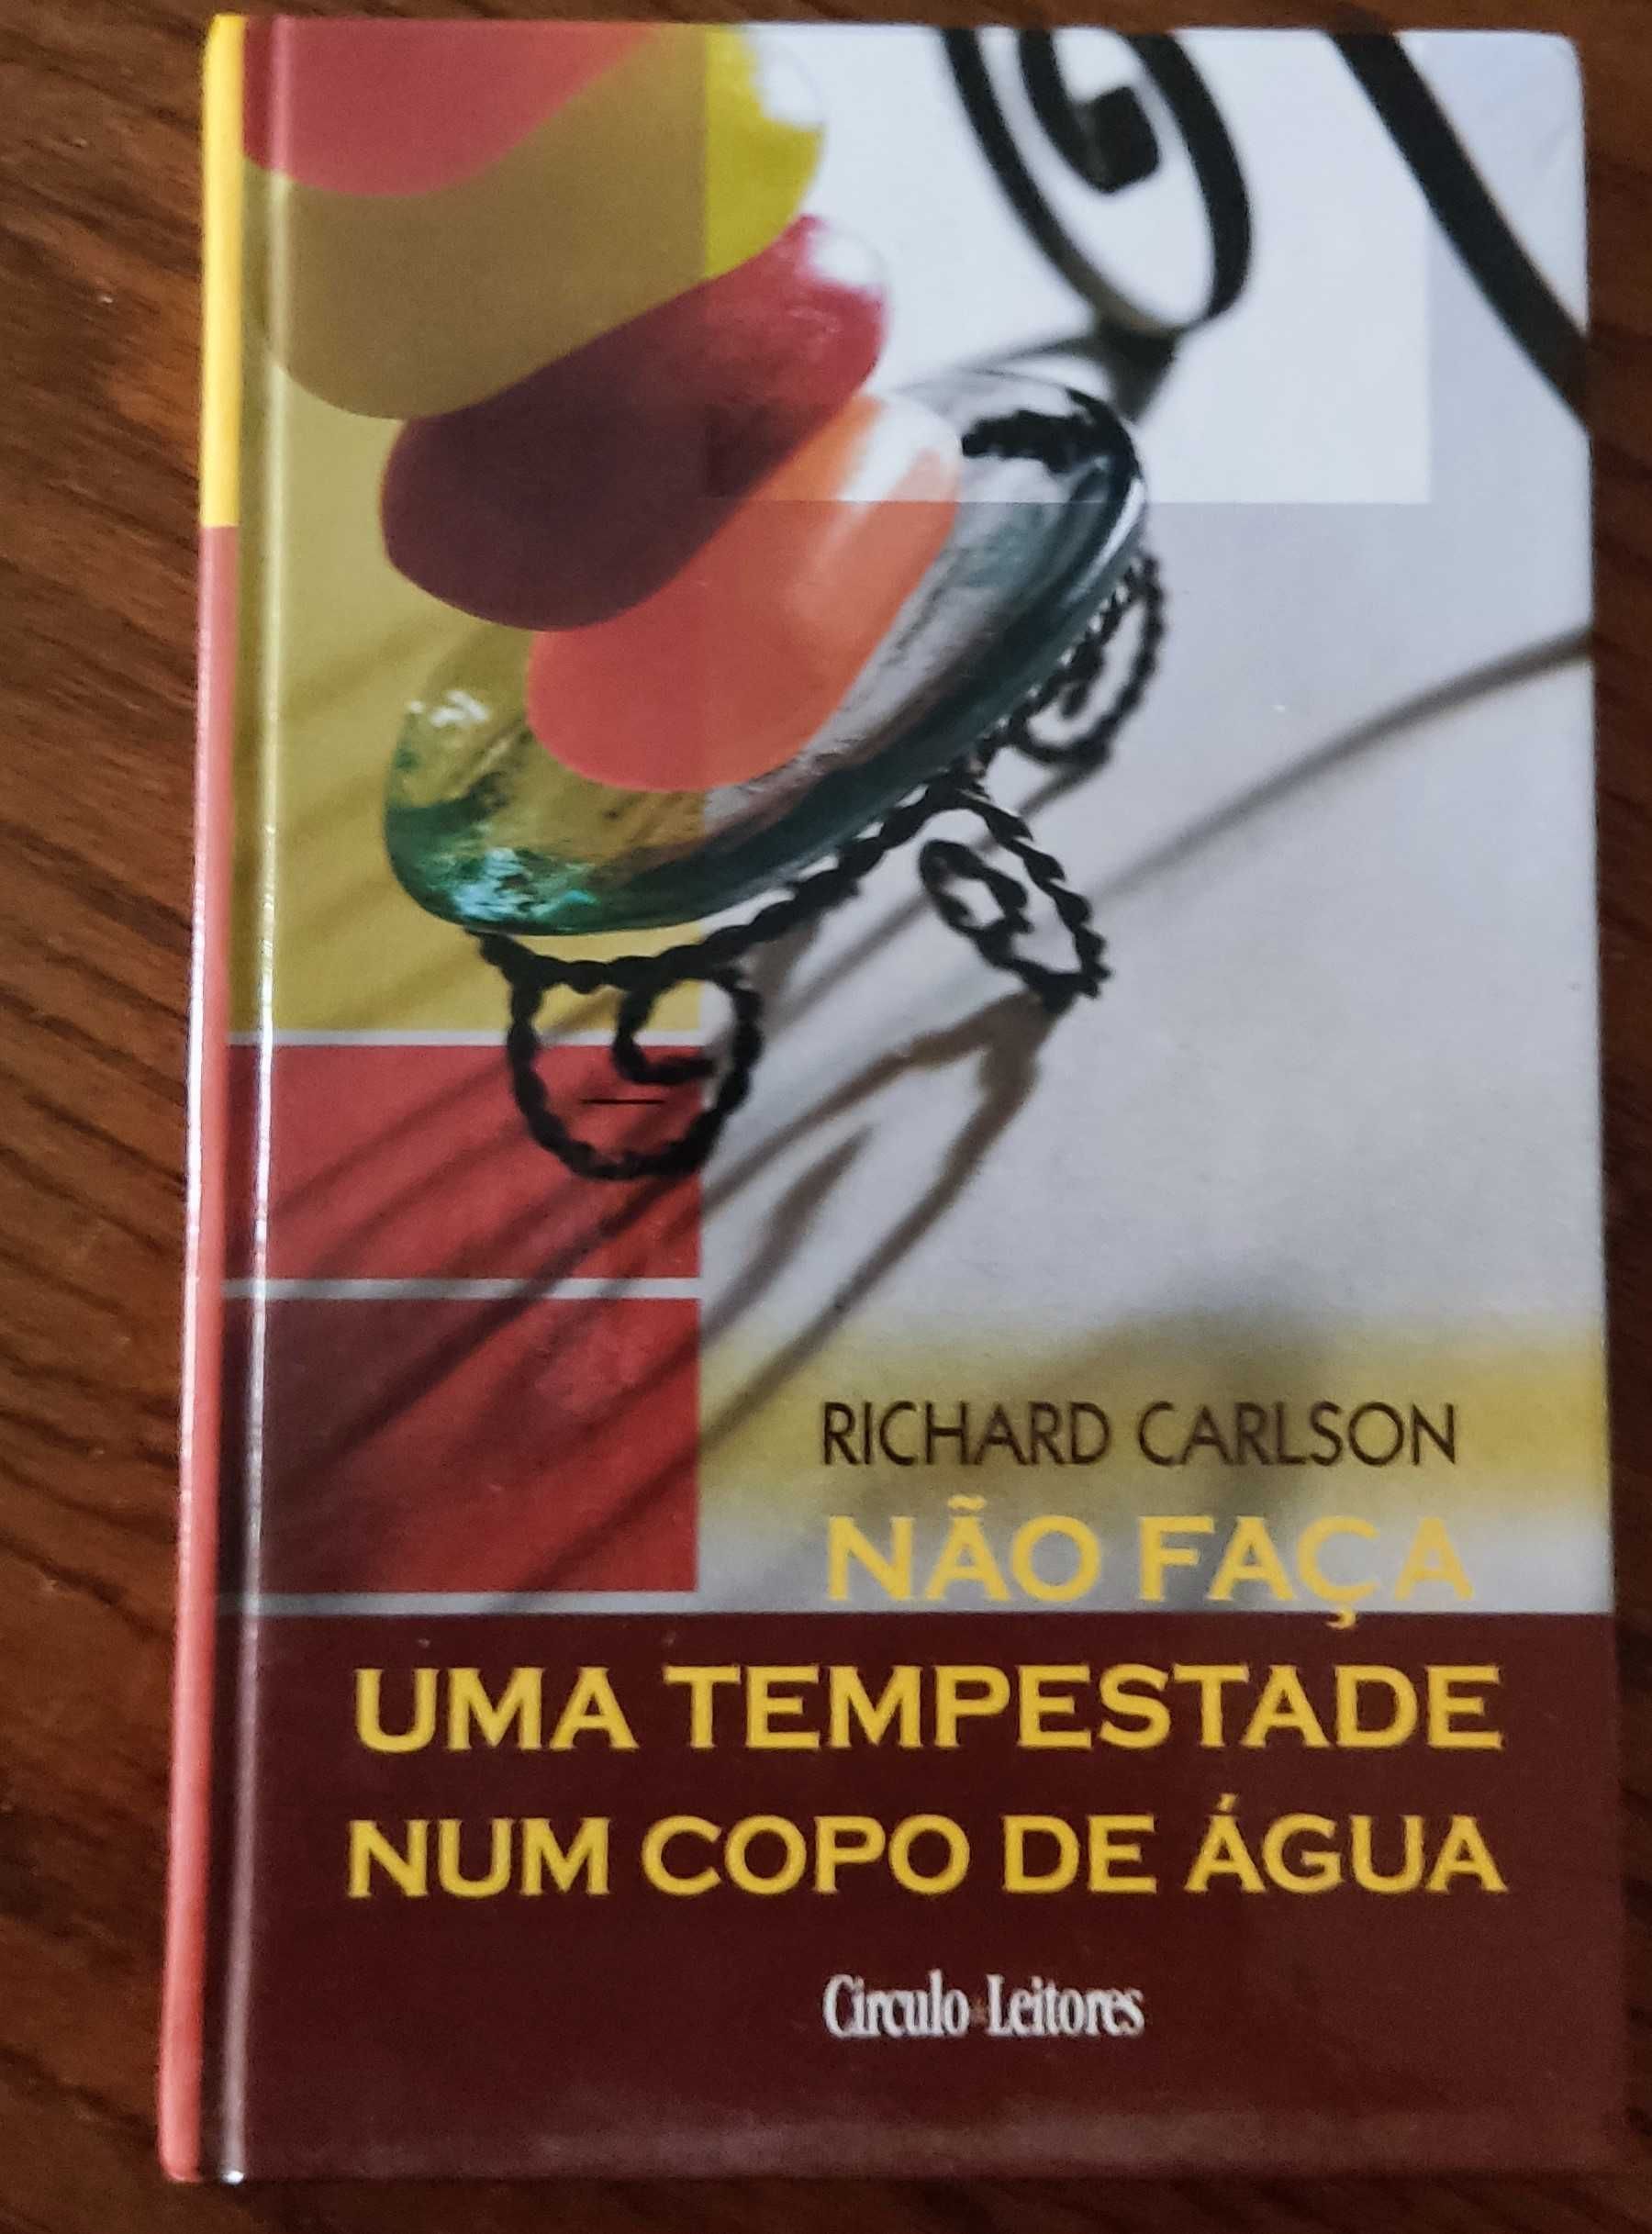 Livro "Não faças uma tempestade num copo de água" - Richard Carlson